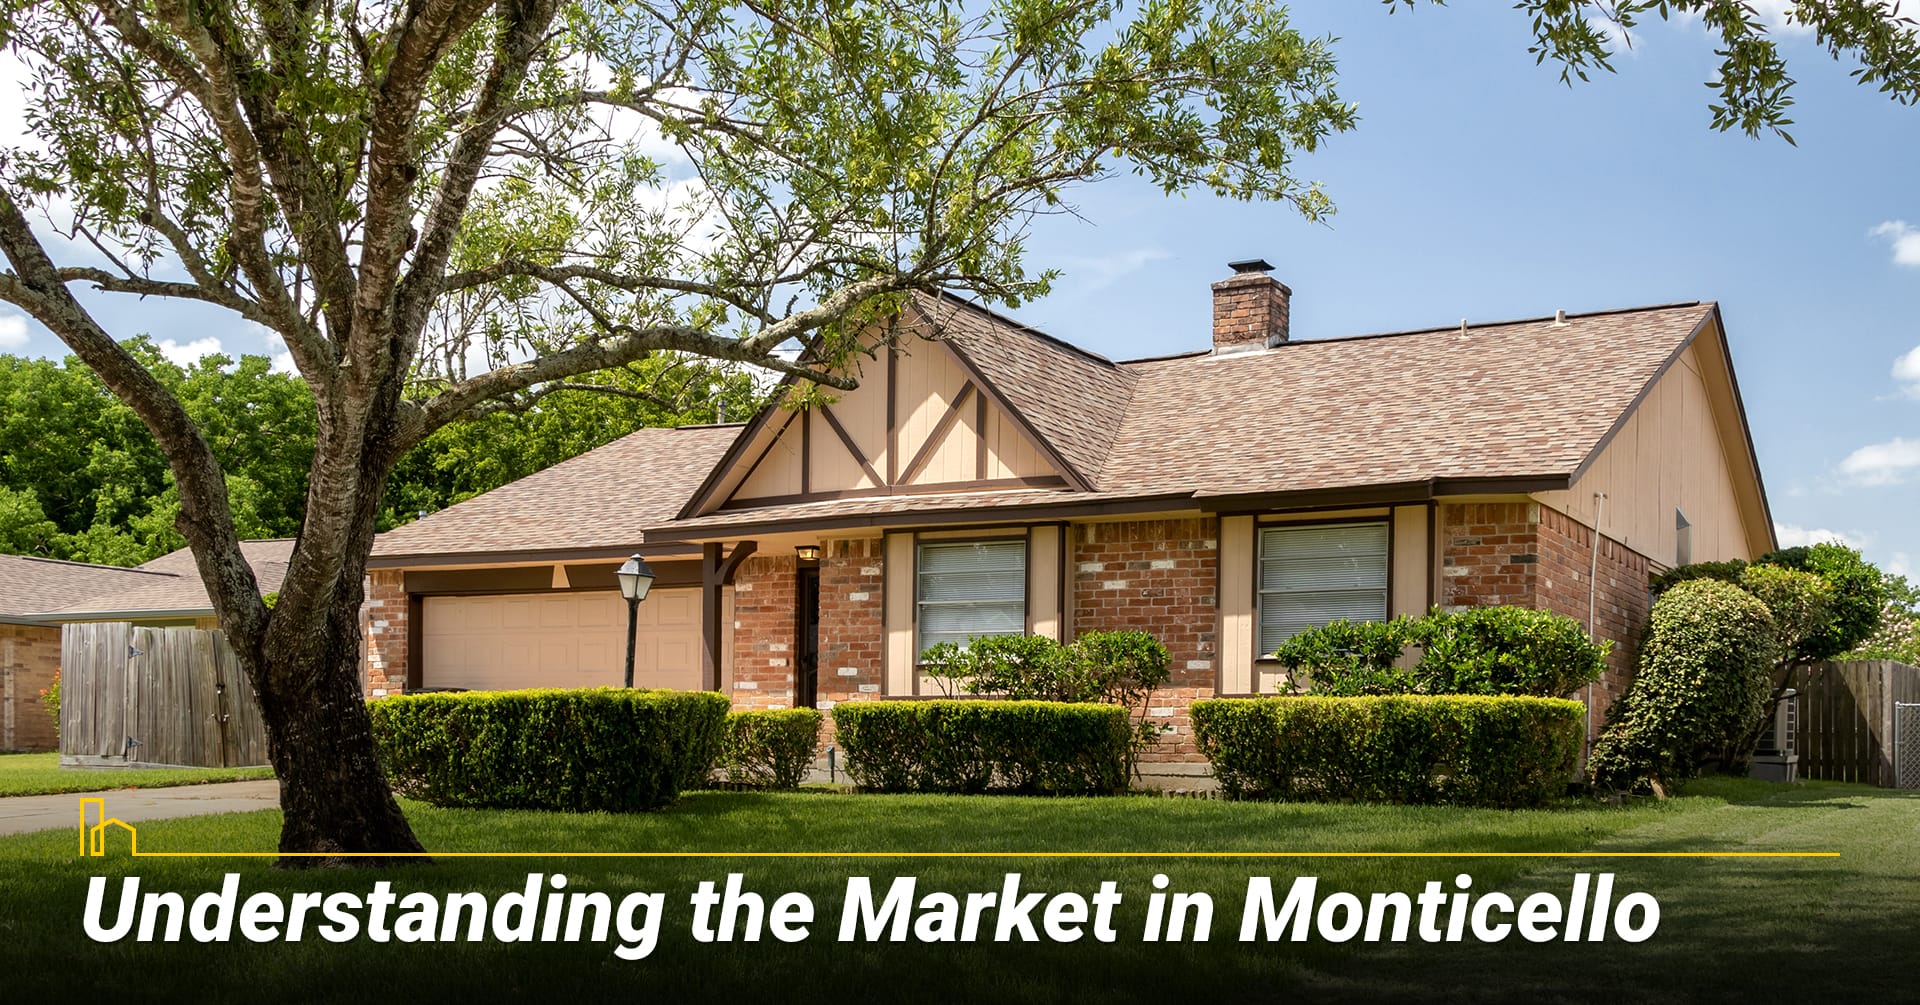 3. Understanding the Market in Monticello